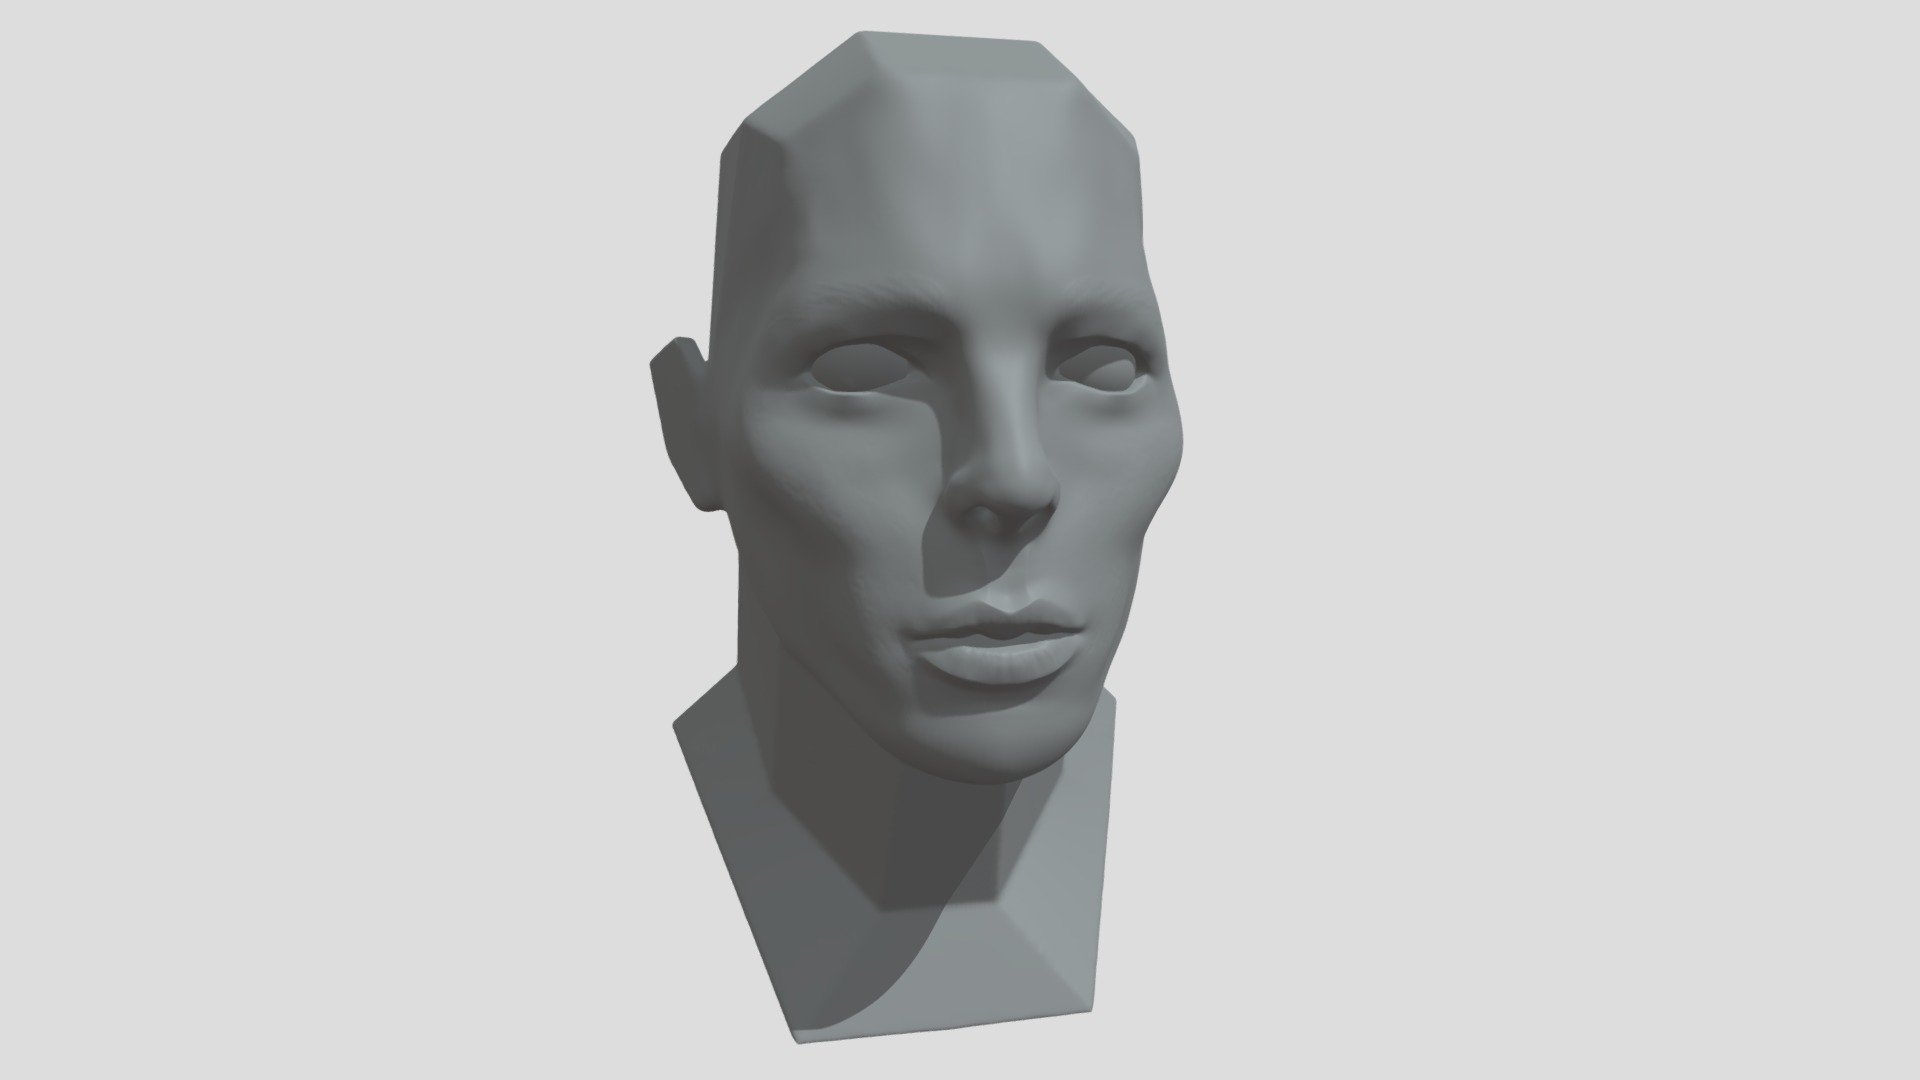 Zbrush Practice - David Bowie Face Sculpt